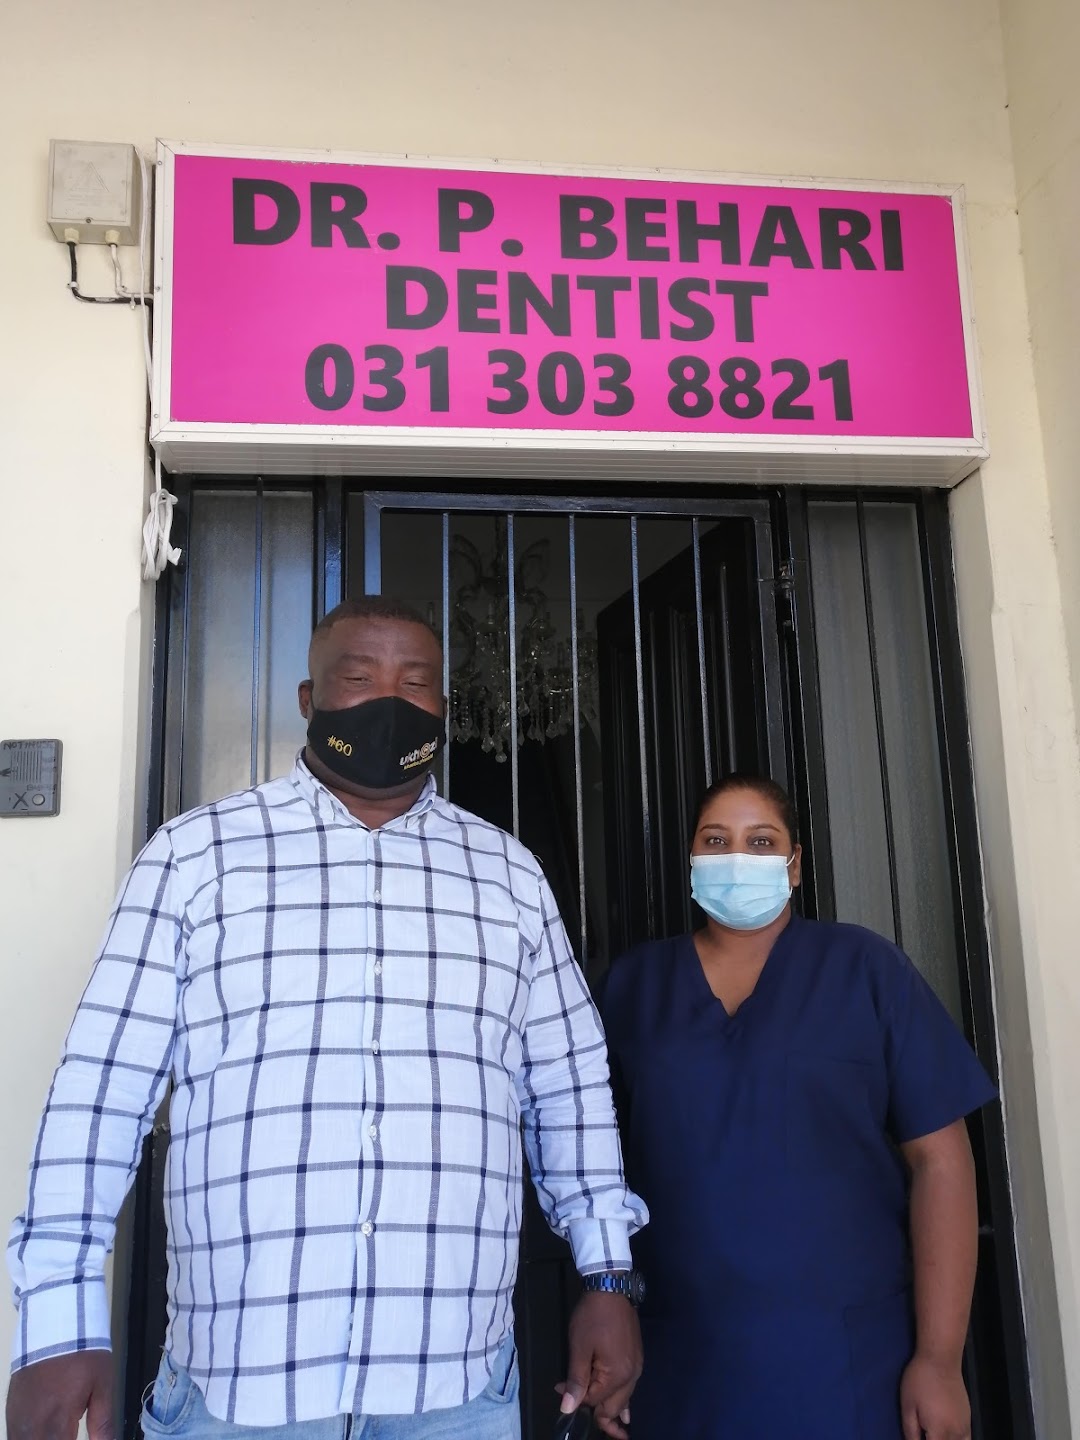 Dr. P. Behari